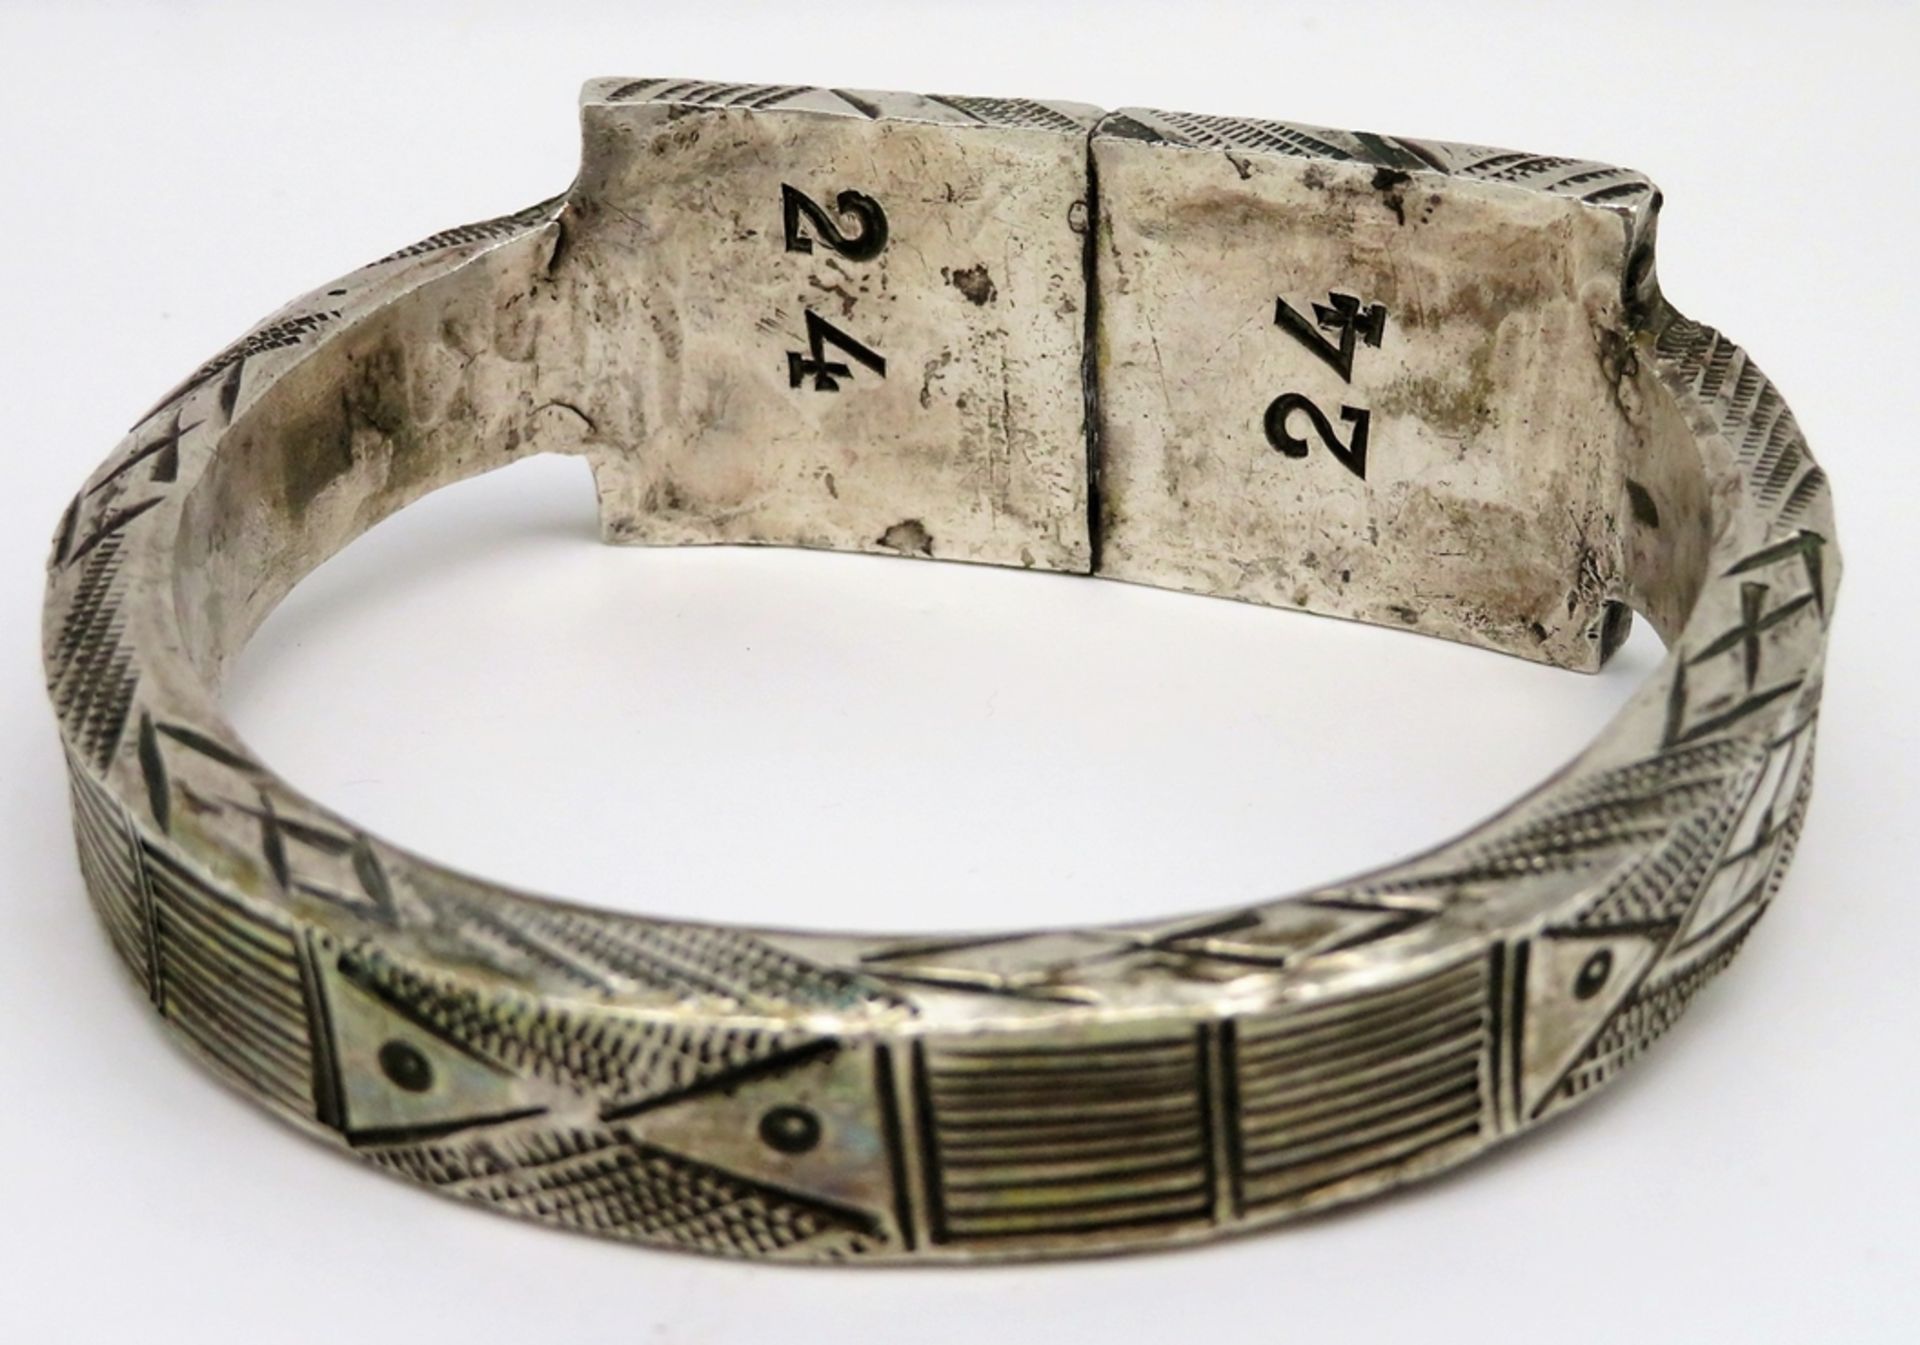 Fußreif, Orient, umlaufend mit reicher Gravur, Silber 800/000, geprüft, 370 g. - Bild 2 aus 2